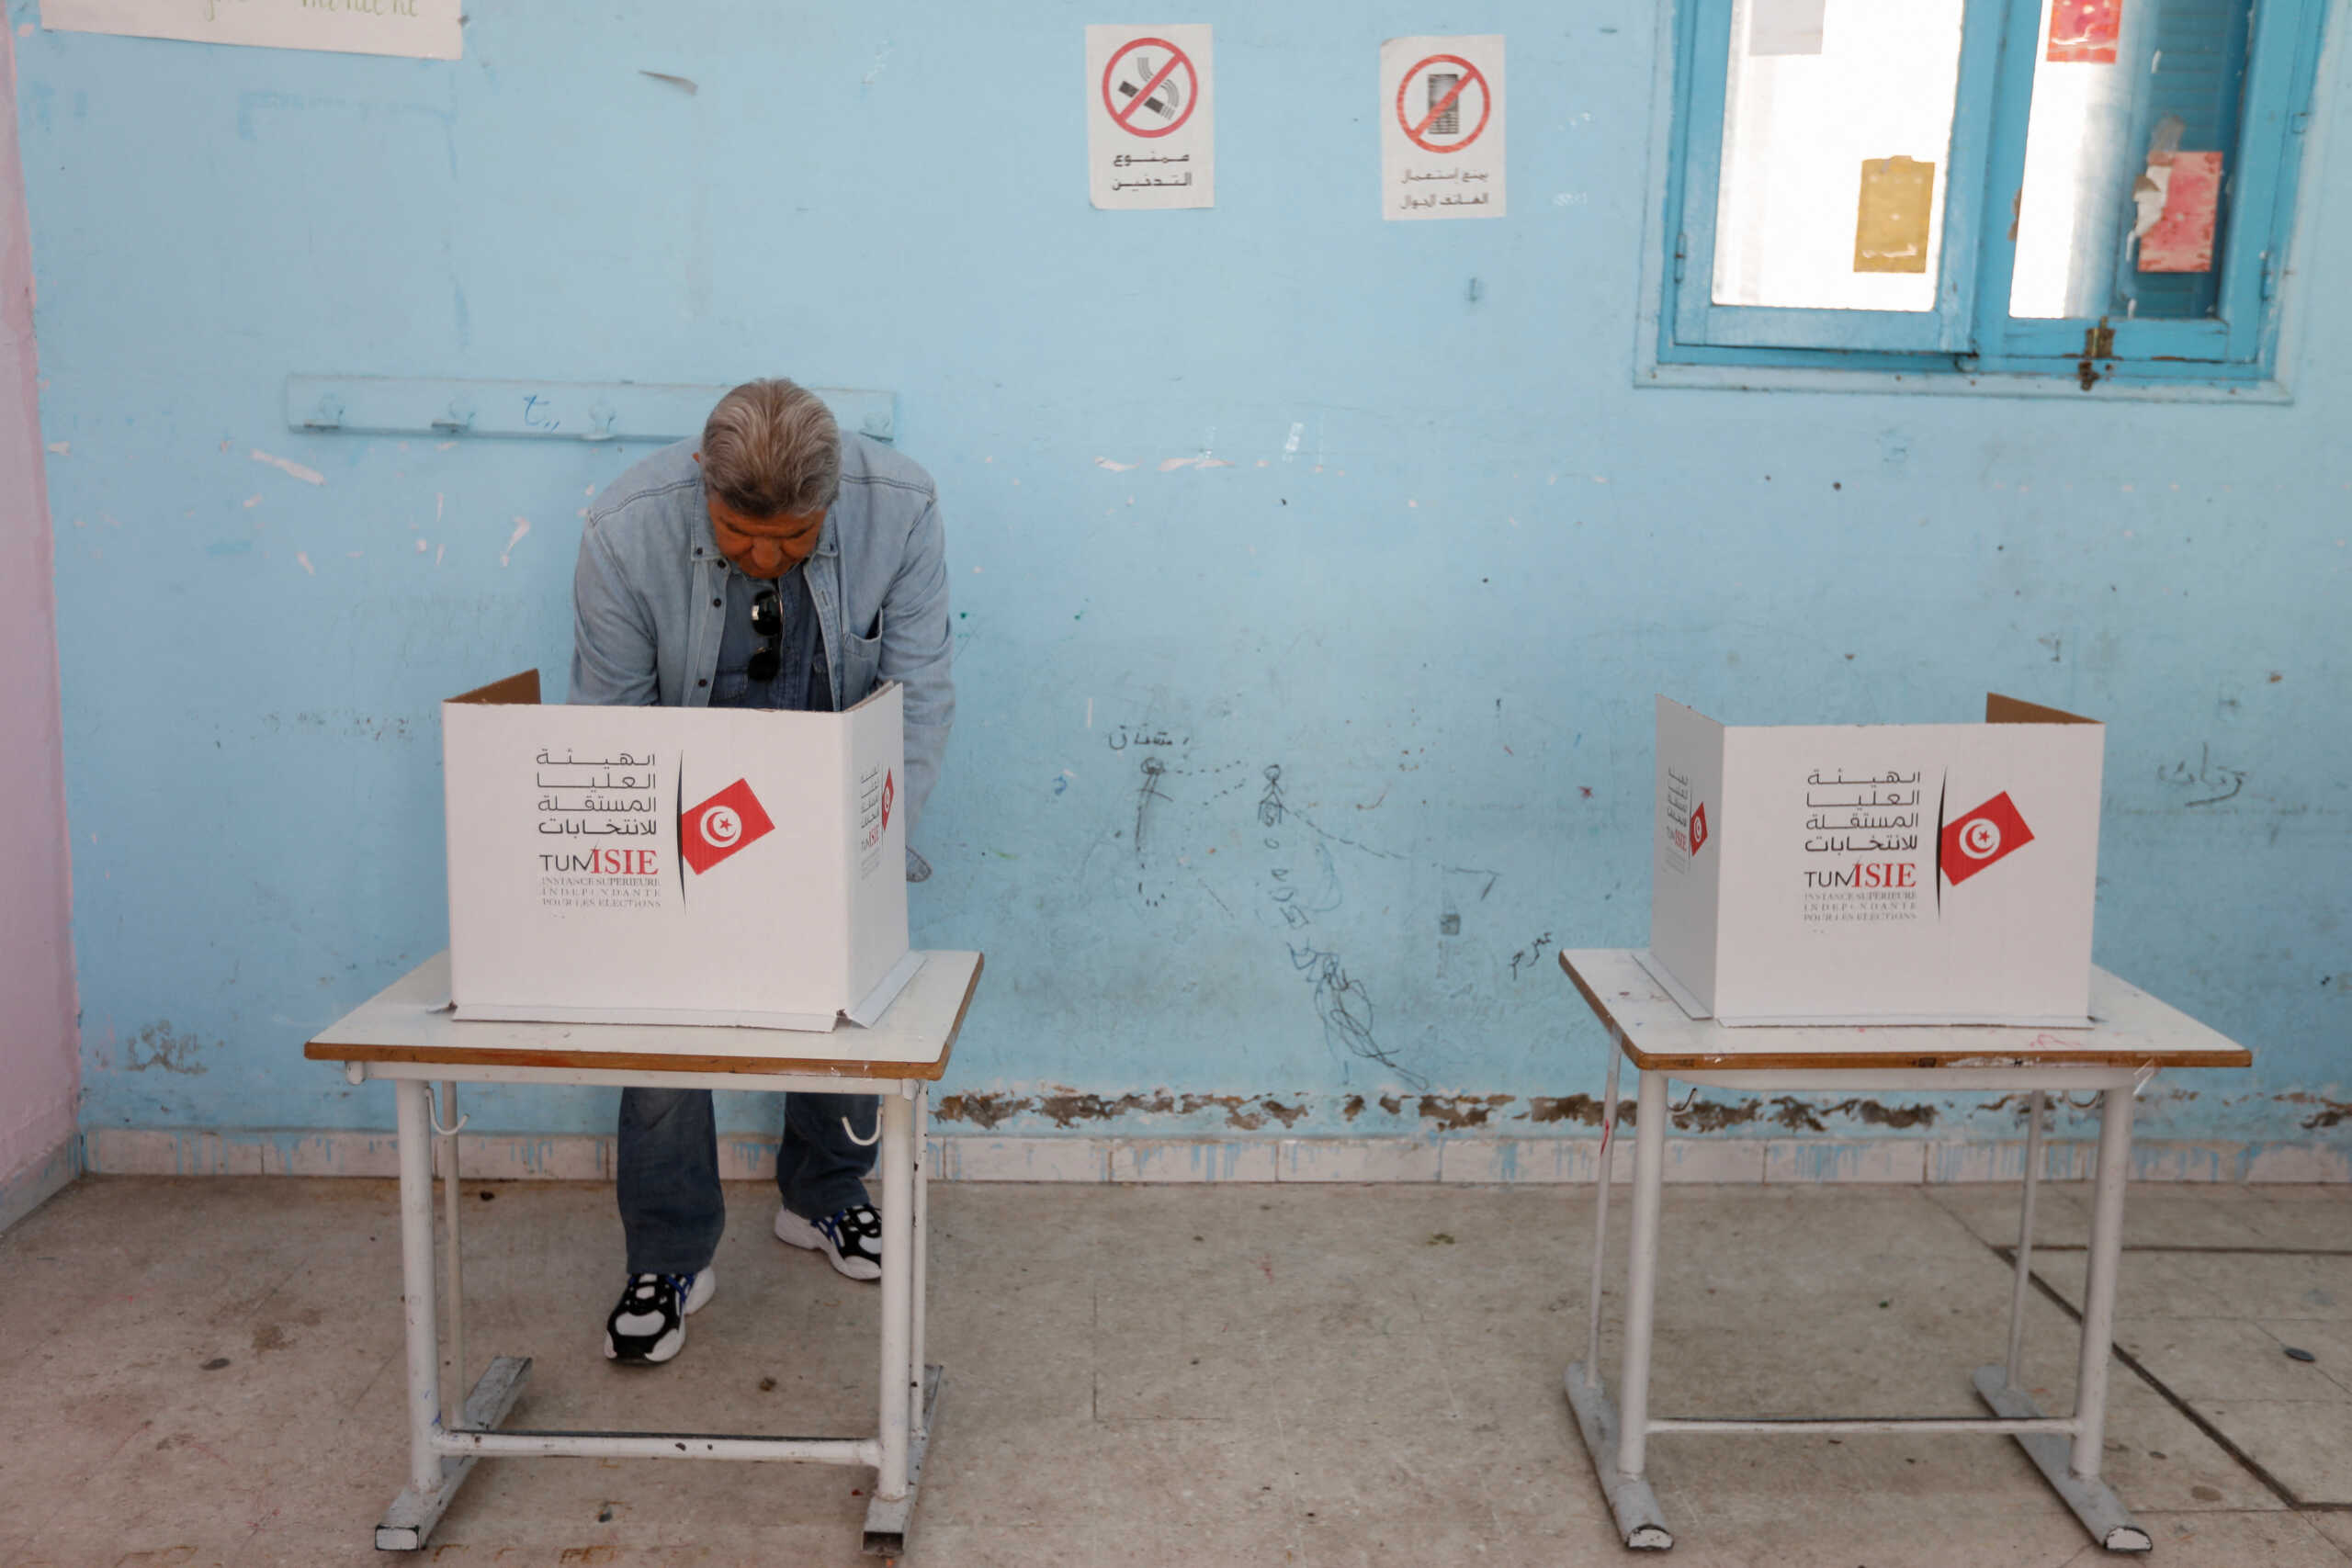 Τυνησία: Ελάχιστοι ψήφισαν στις βουλευτικές εκλογές – Χαμηλότερο ποσοστό και από τον πληθωρισμό